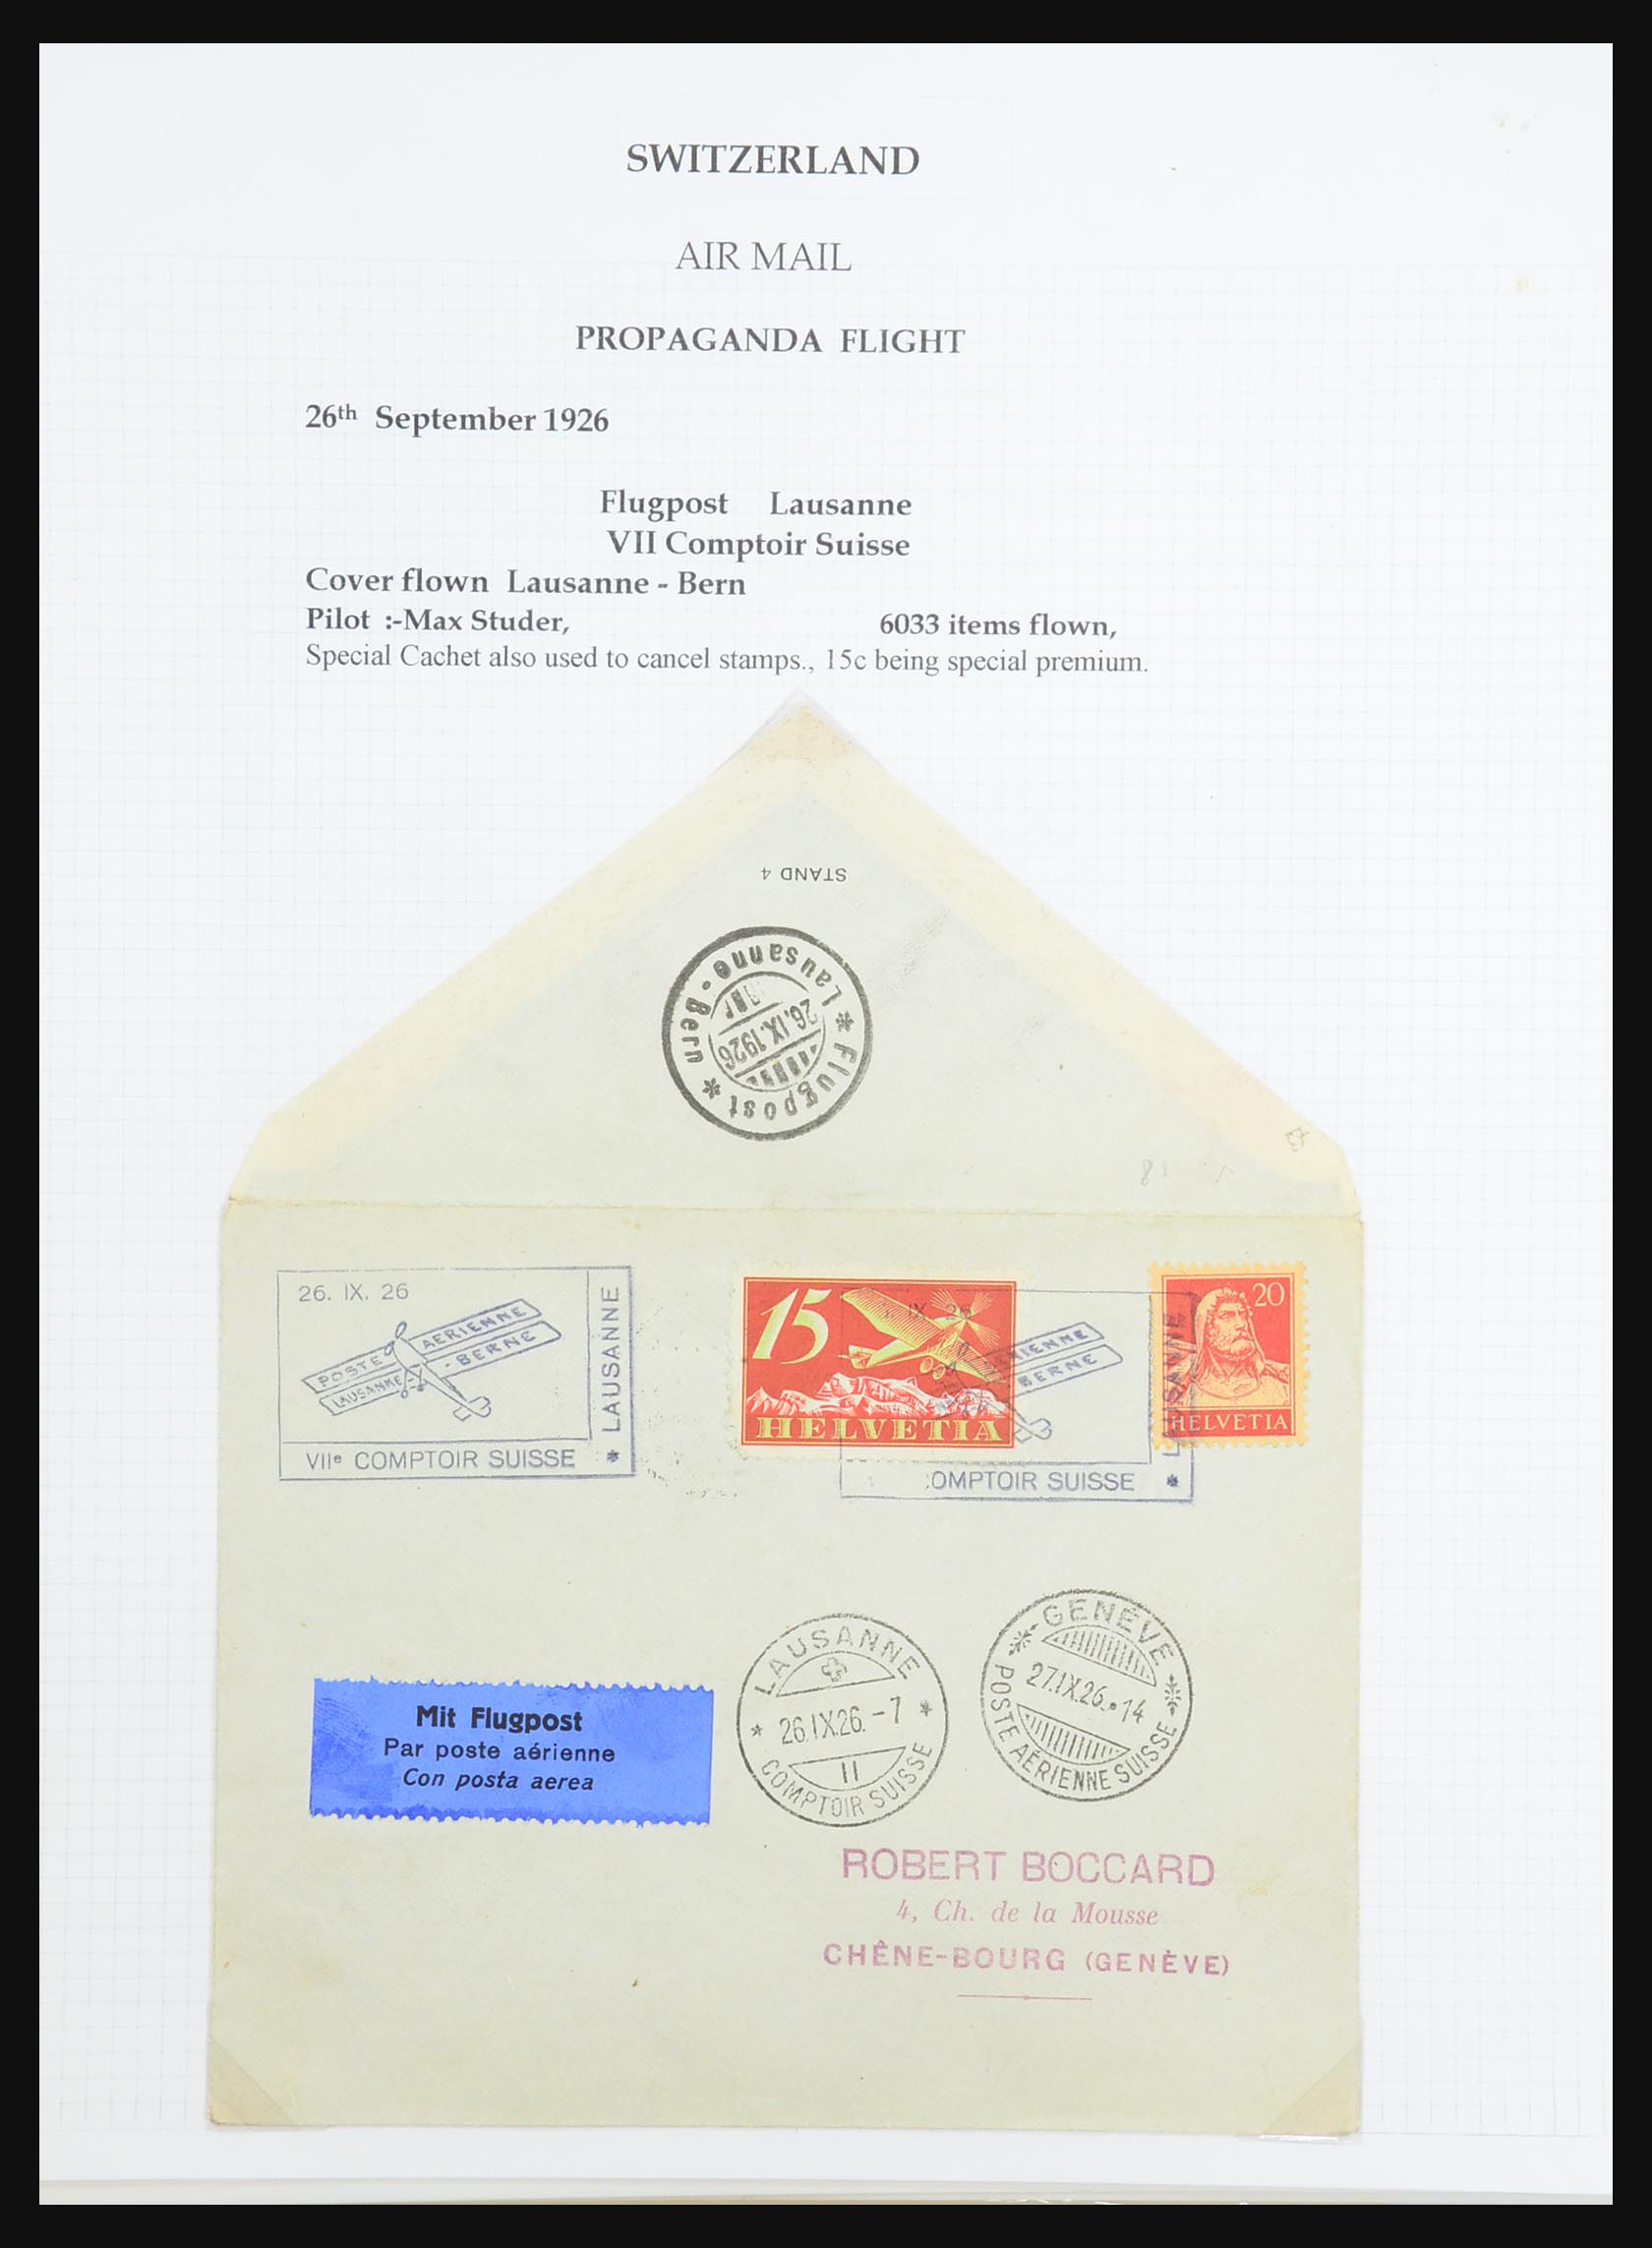 31444 035 - 31444 Zwitserland luchtpost brieven 1922-1946.